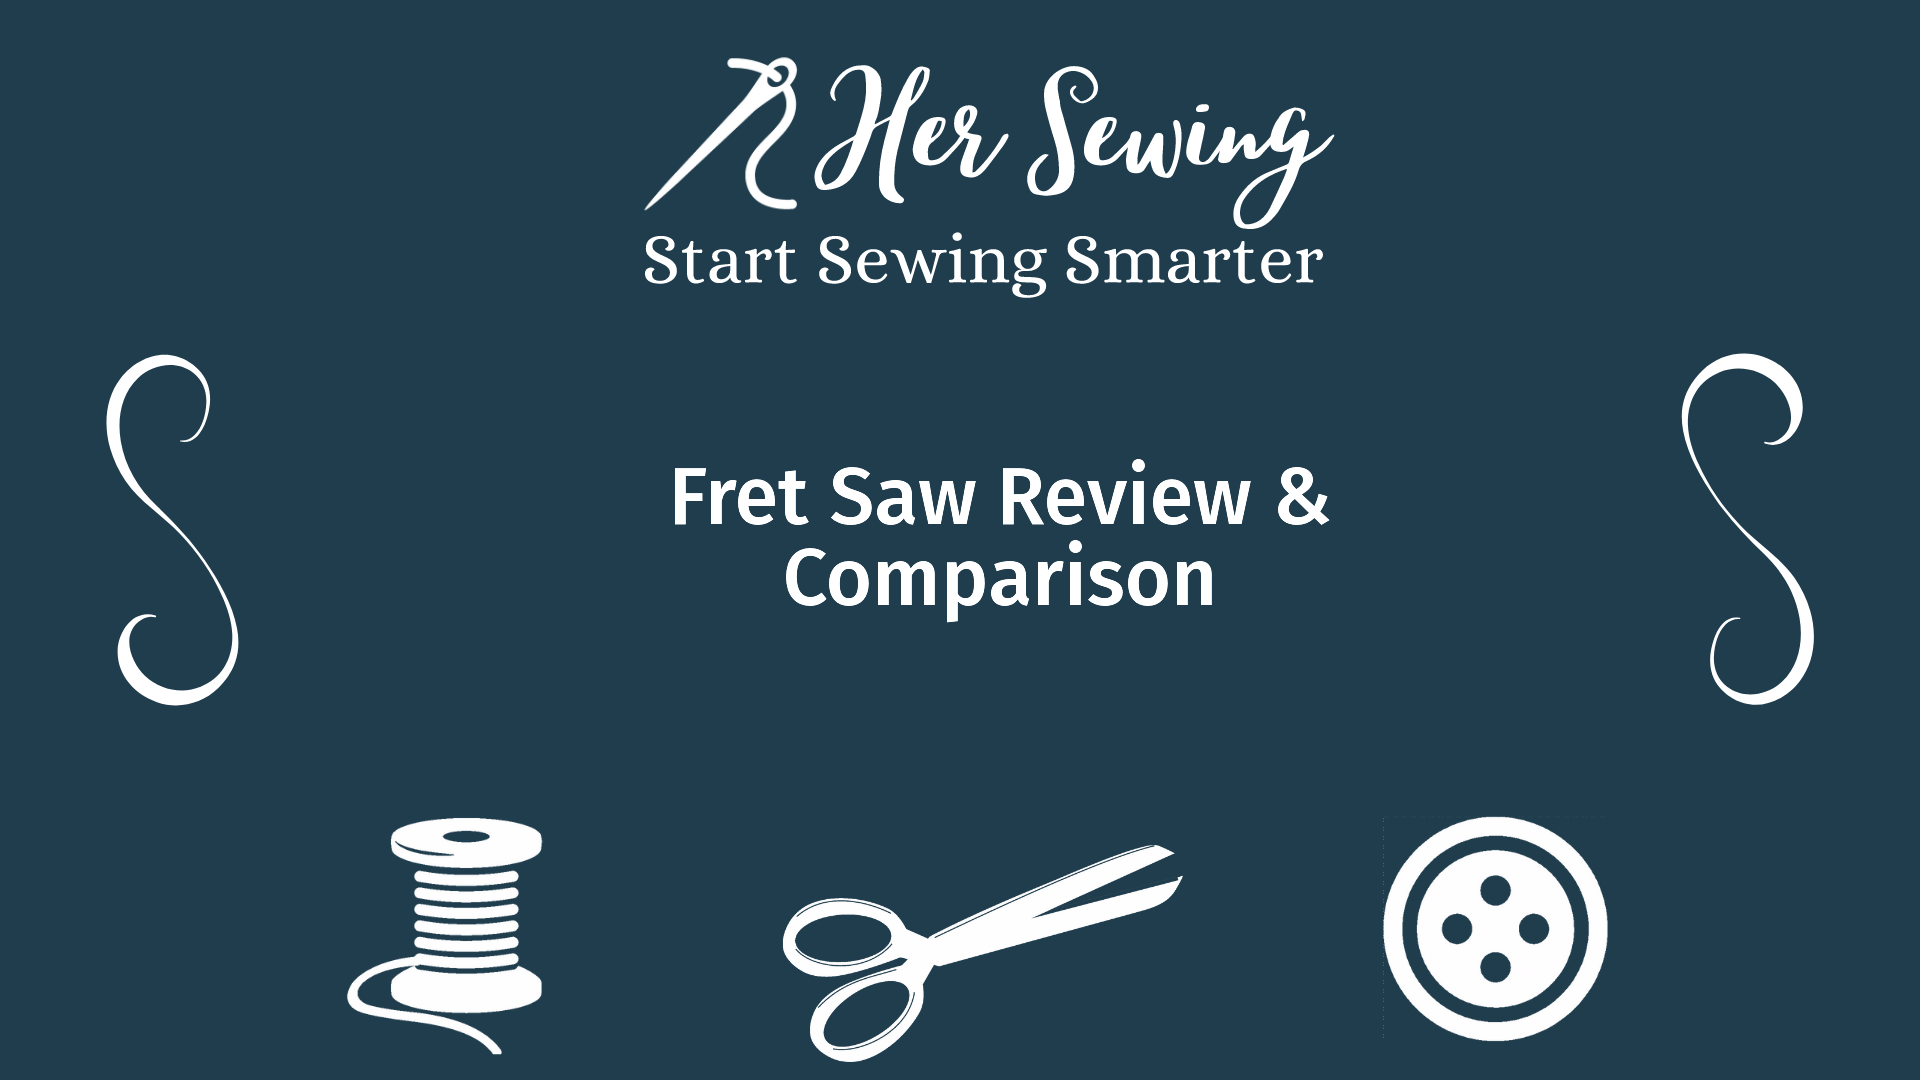 Fret Saw Review & Comparison